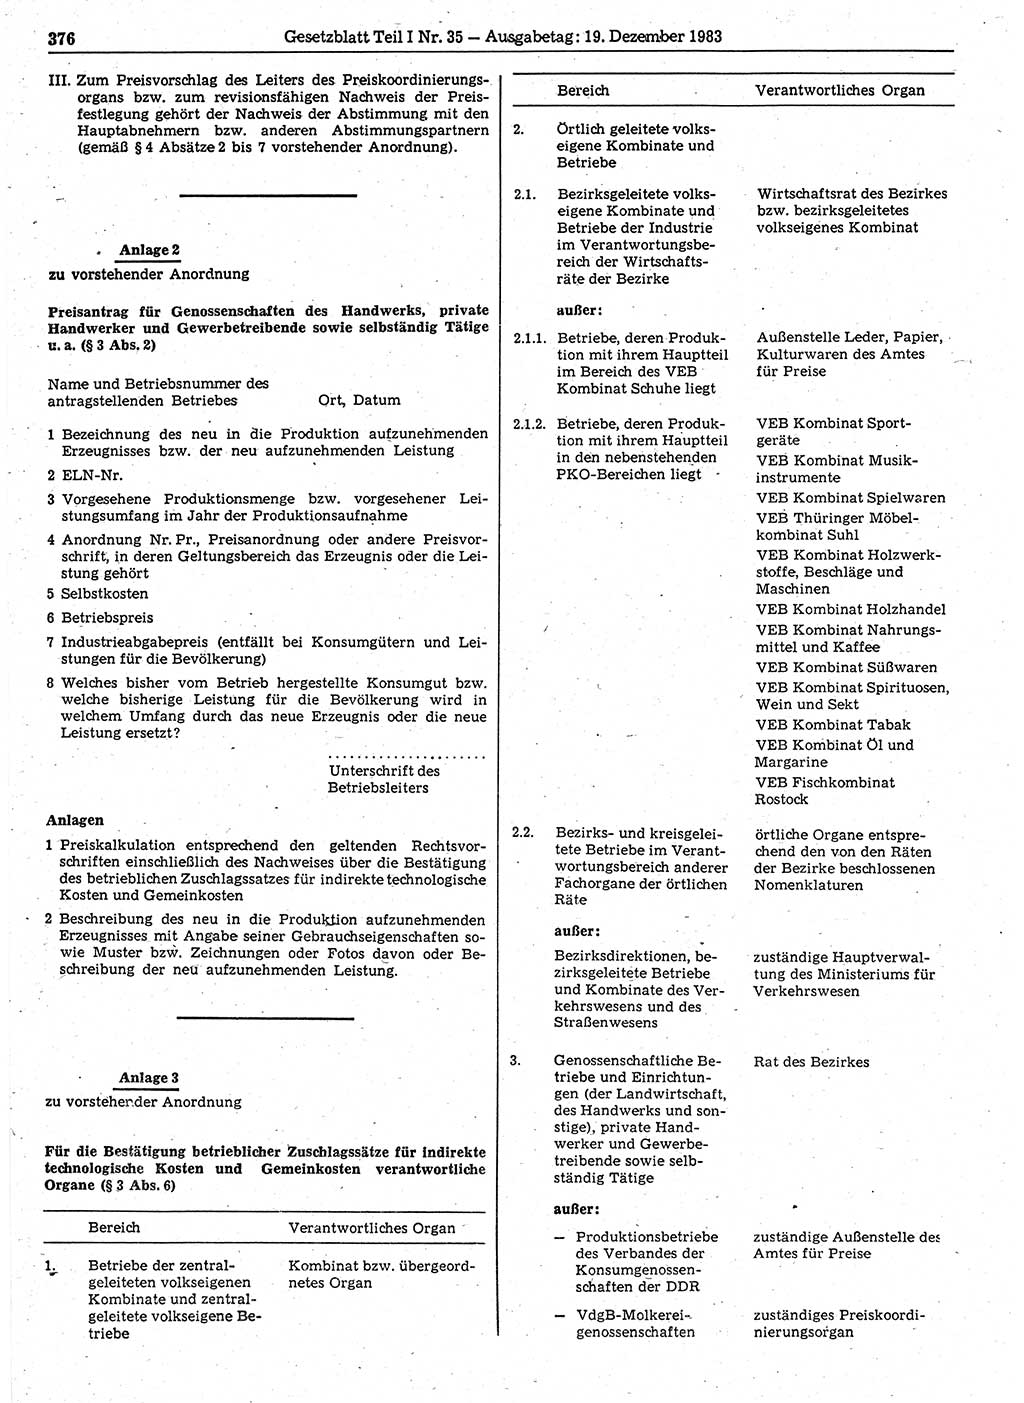 Gesetzblatt (GBl.) der Deutschen Demokratischen Republik (DDR) Teil Ⅰ 1983, Seite 376 (GBl. DDR Ⅰ 1983, S. 376)